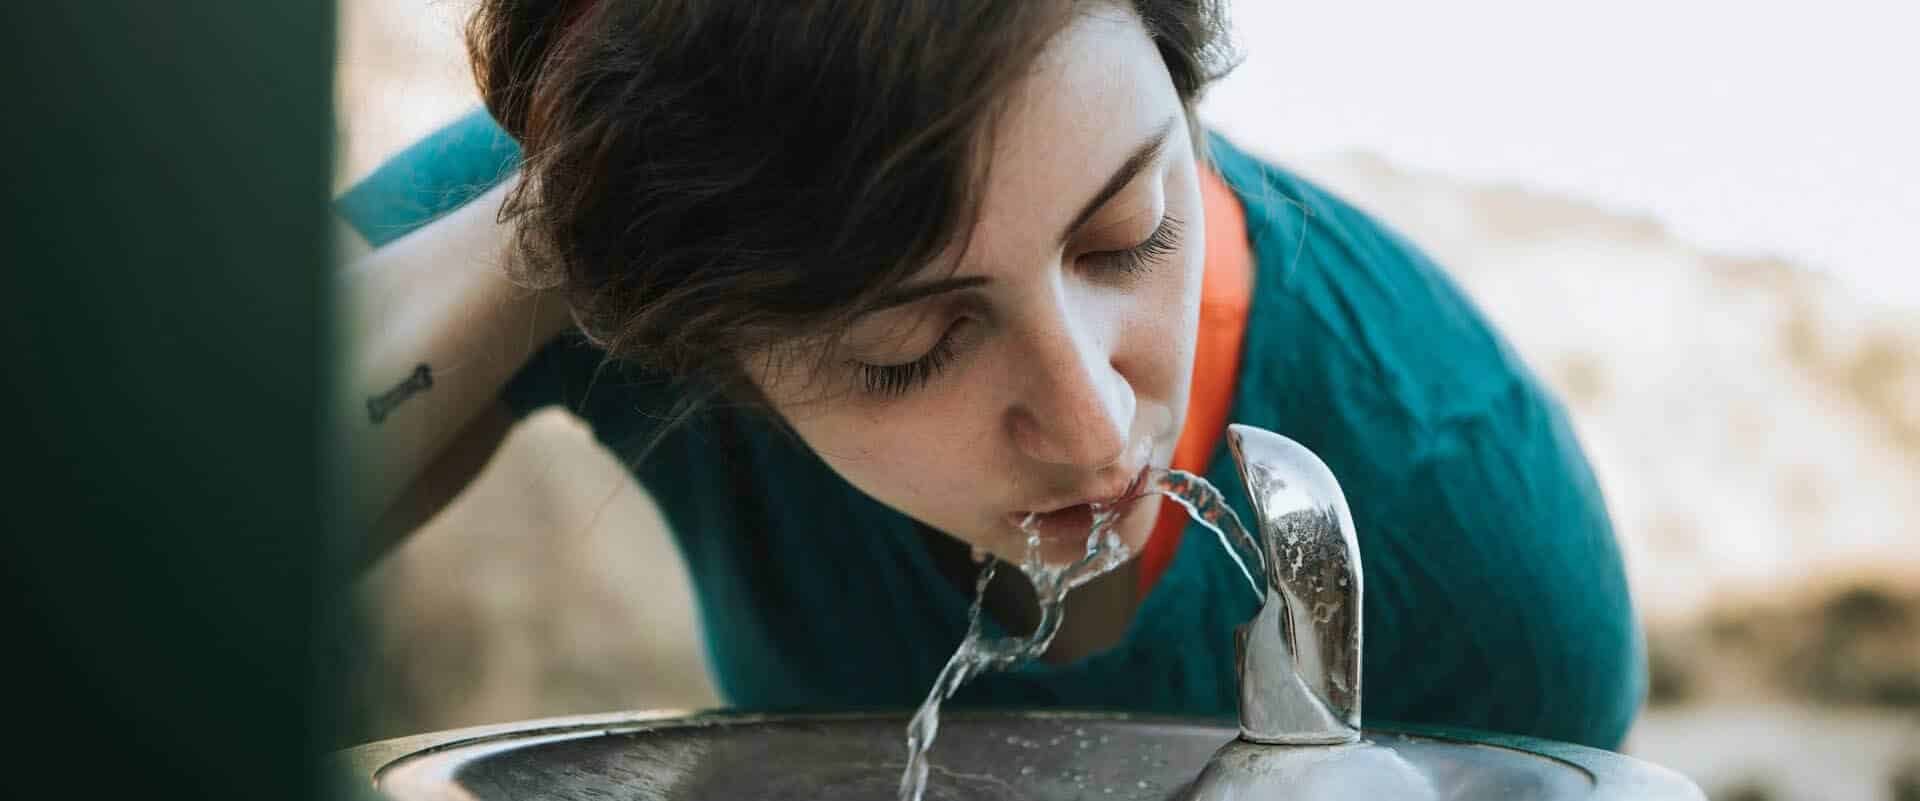 Wasser trinken - Wie viel Wasser am Tag ist gesund?